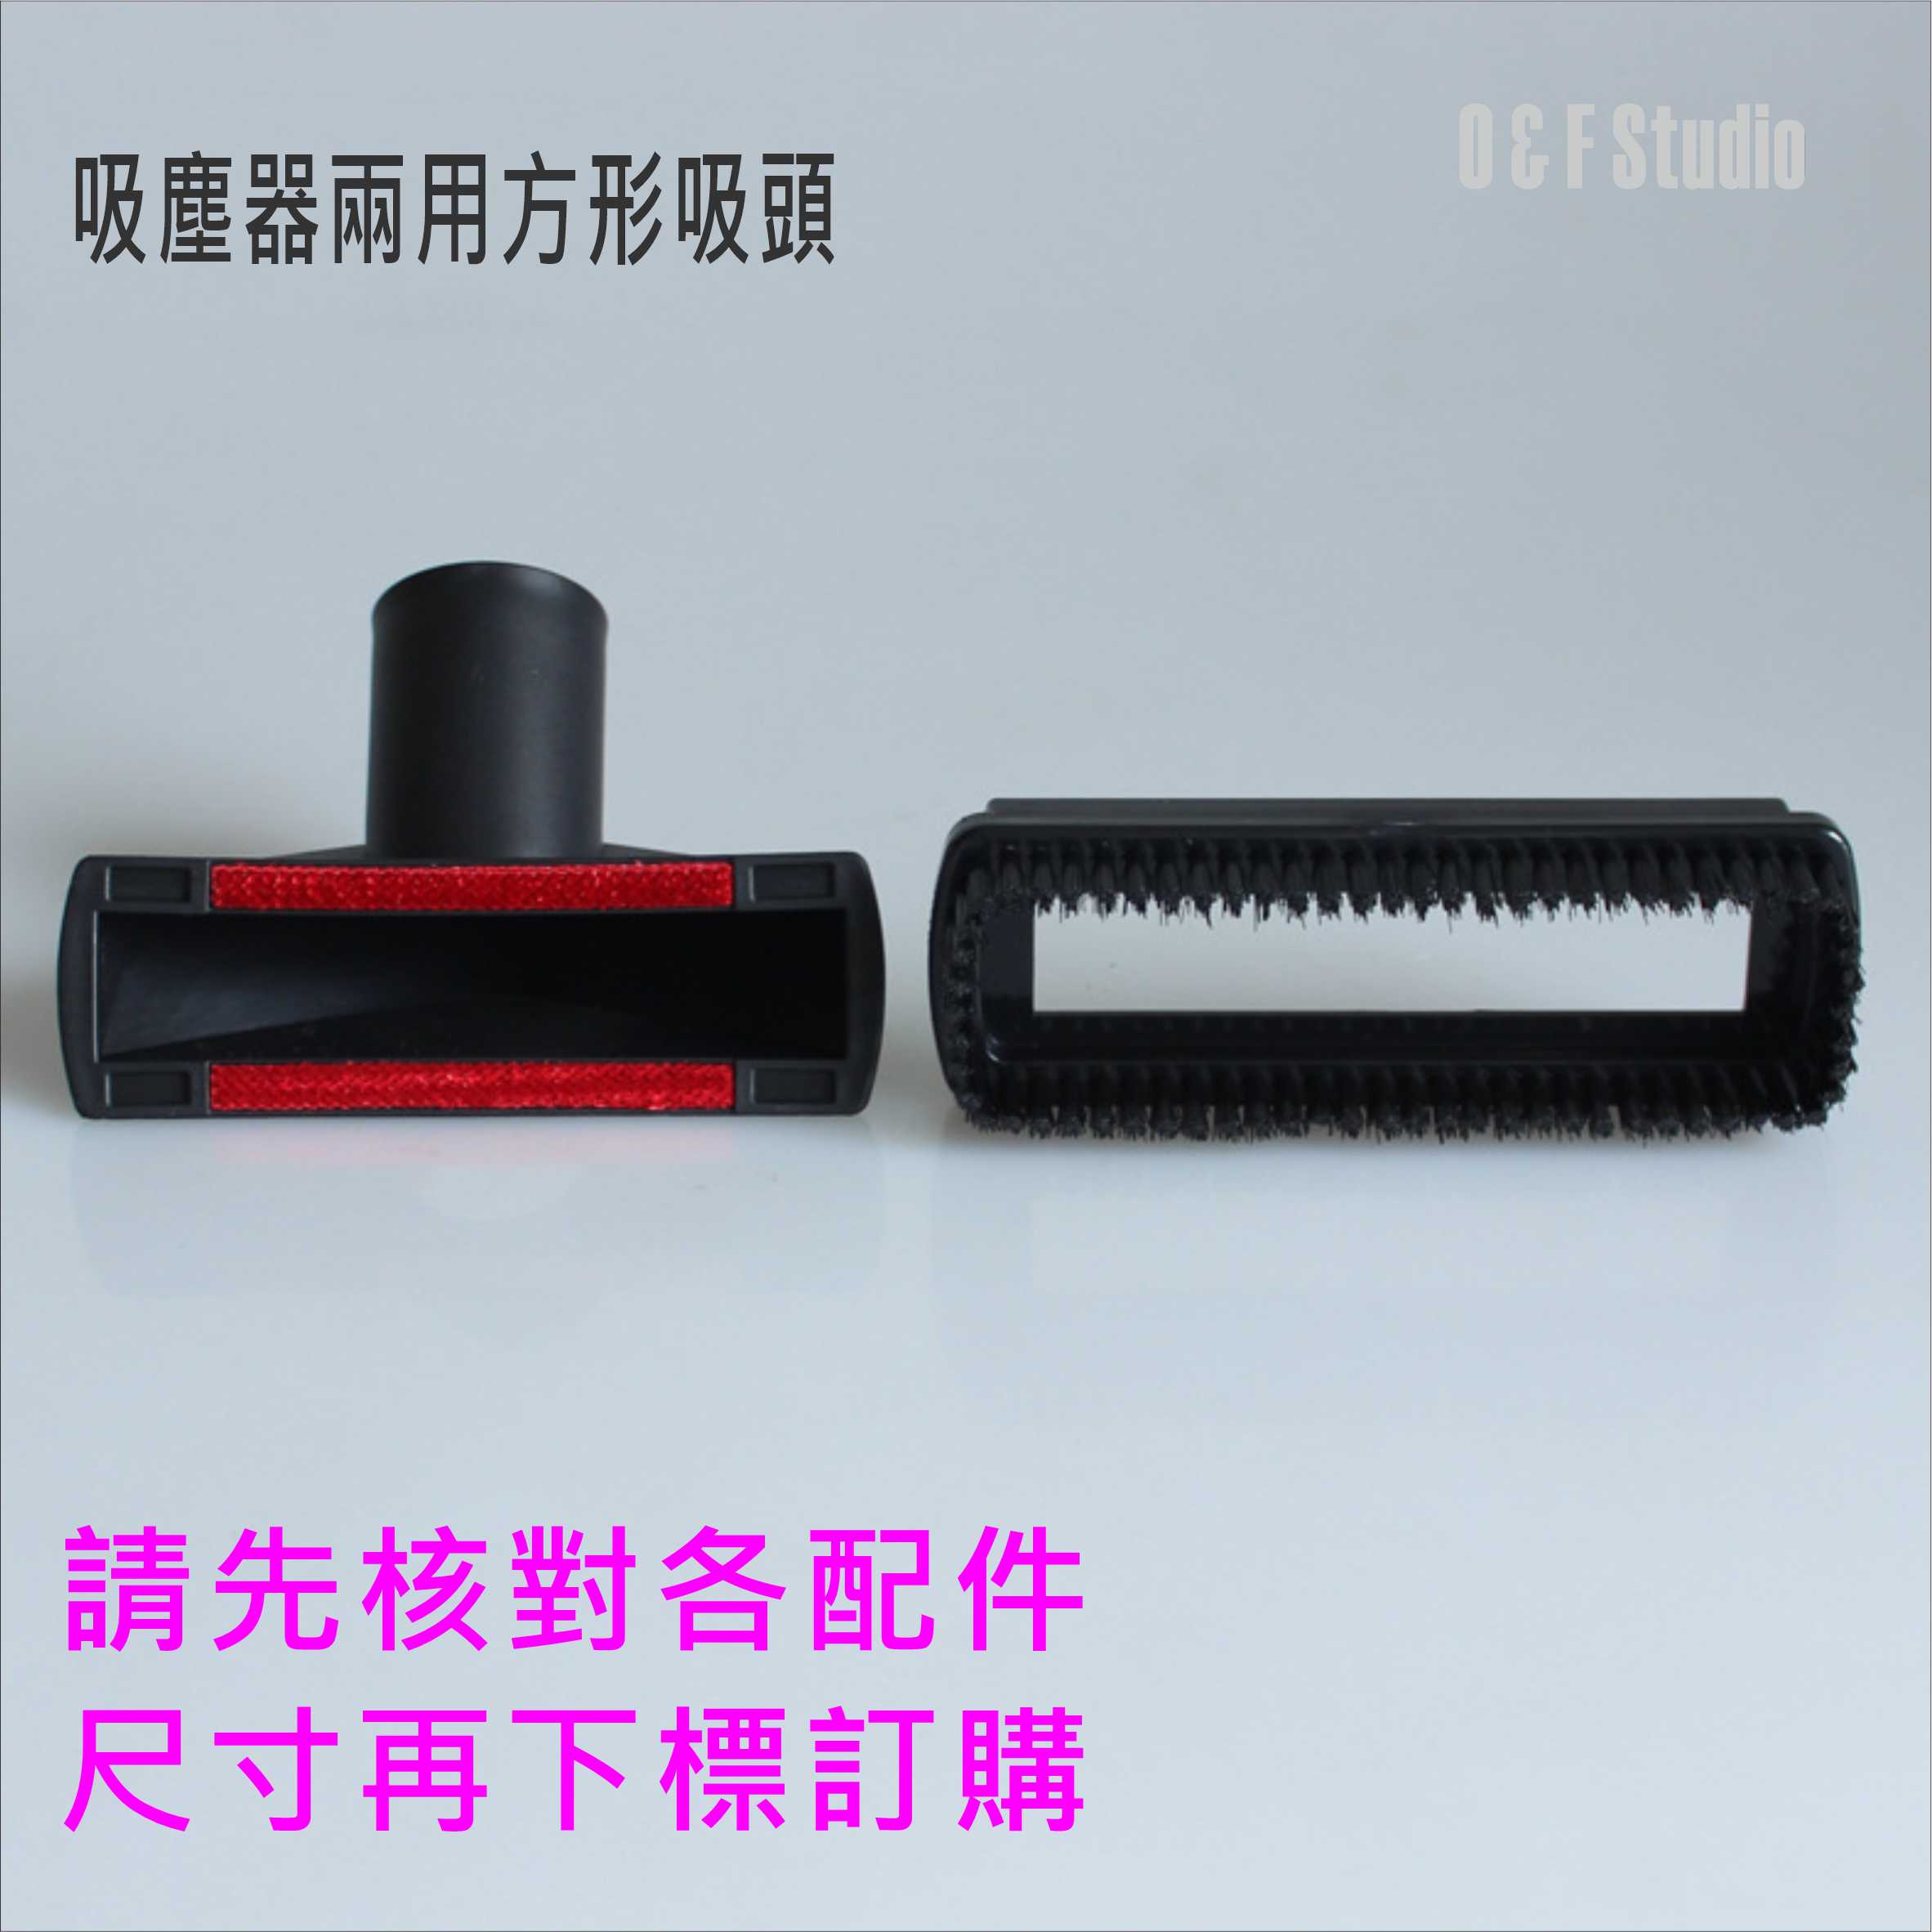 吸塵器配件 吸塵器兩用方形吸頭(內徑32mm) 直管外徑31MM可使用 吸頭配件 耗材 台灣現貨【居家達人VBC019】